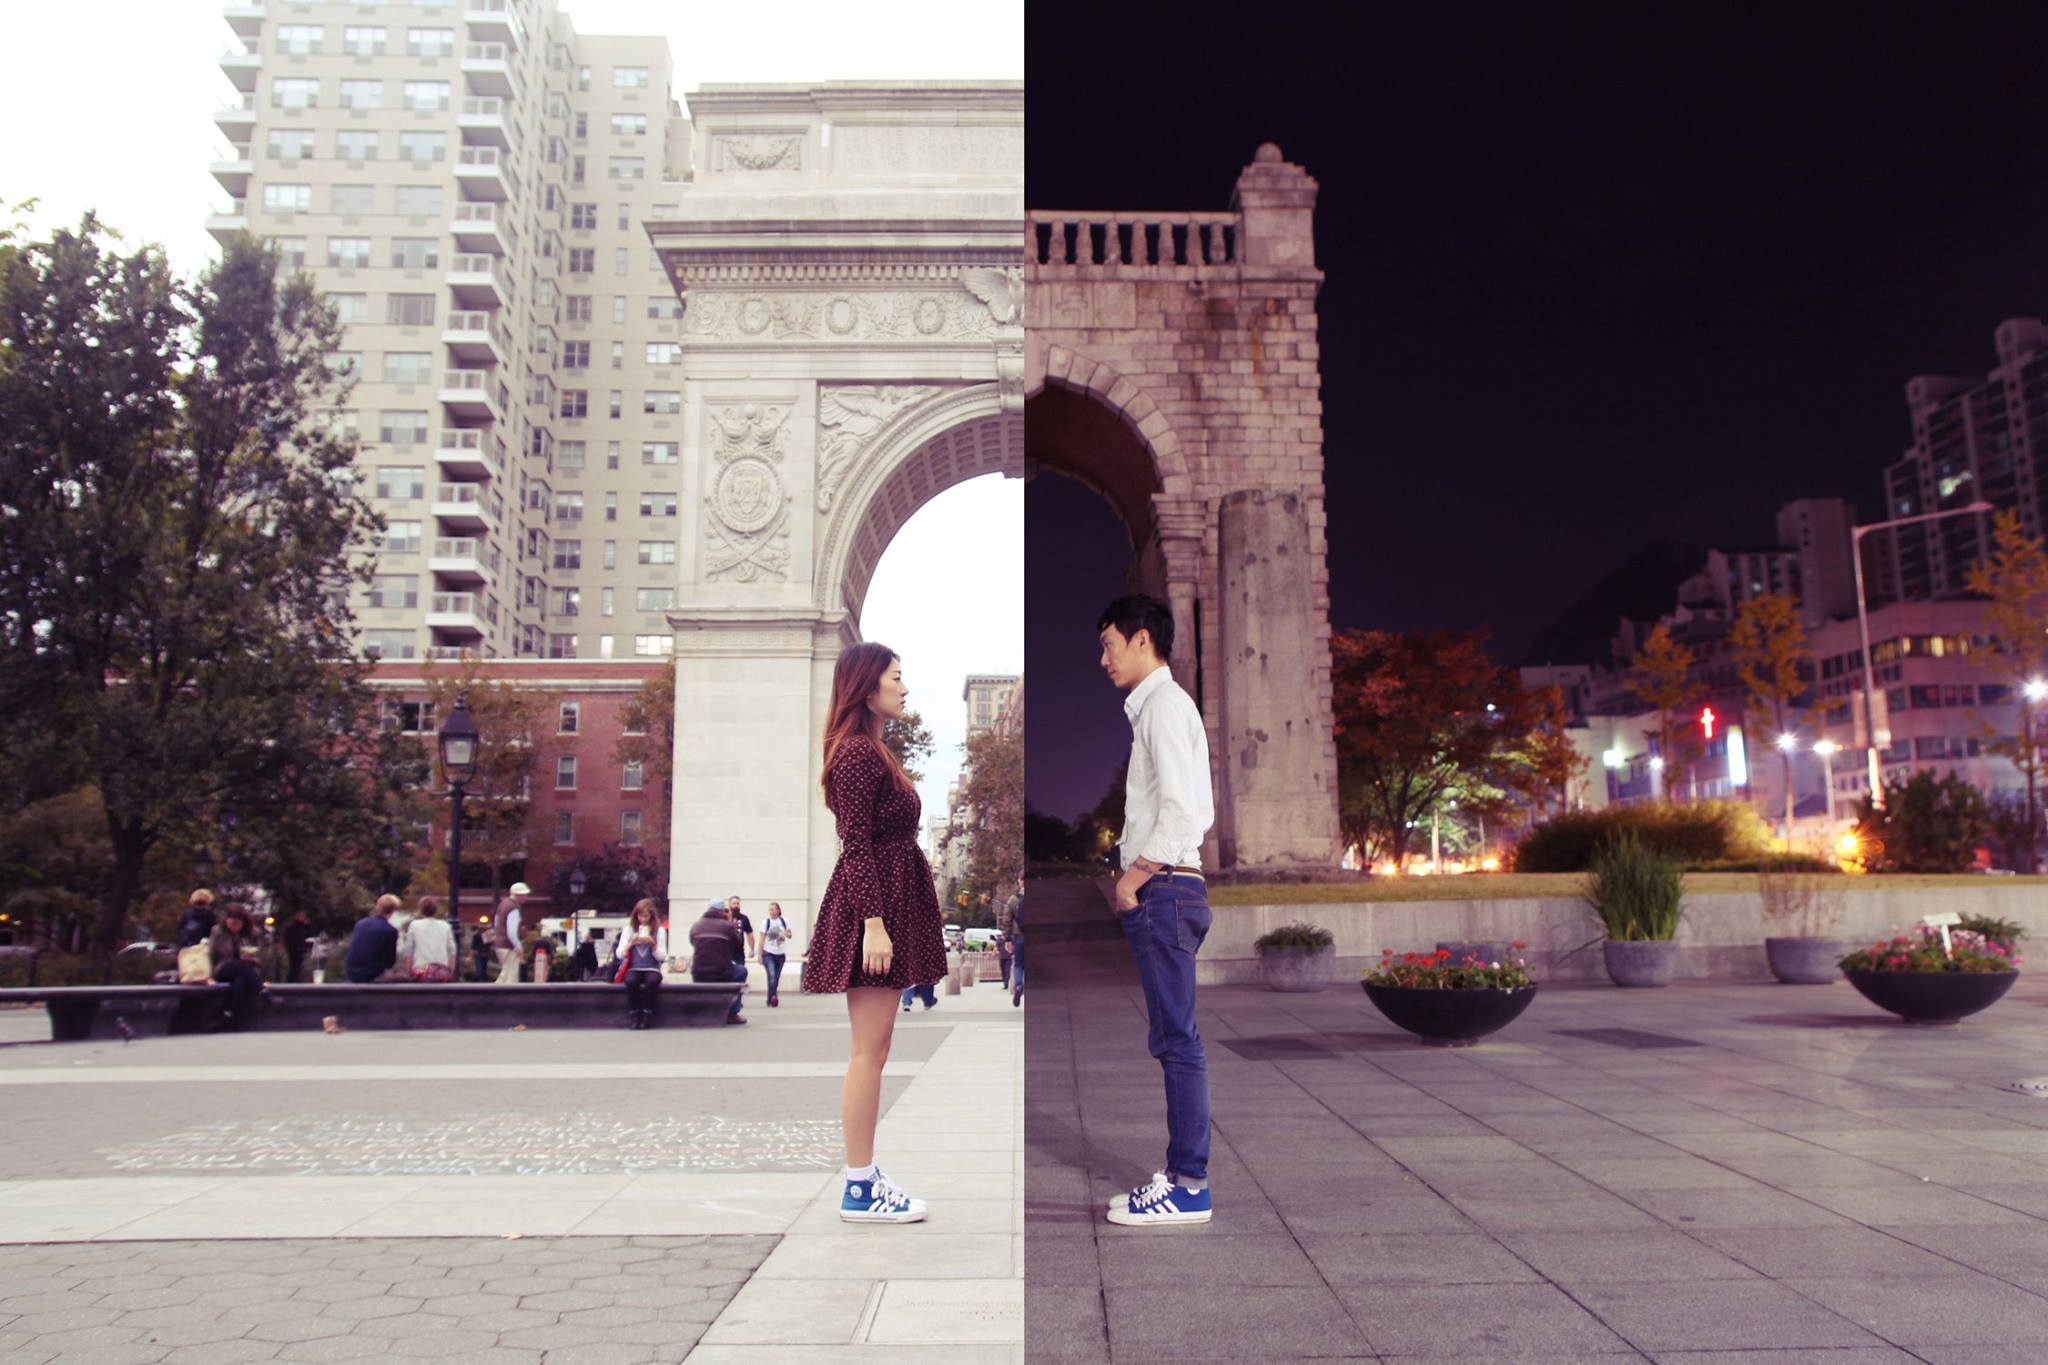 Una coppia di innamorati crea collage per superare la distanza che li divide